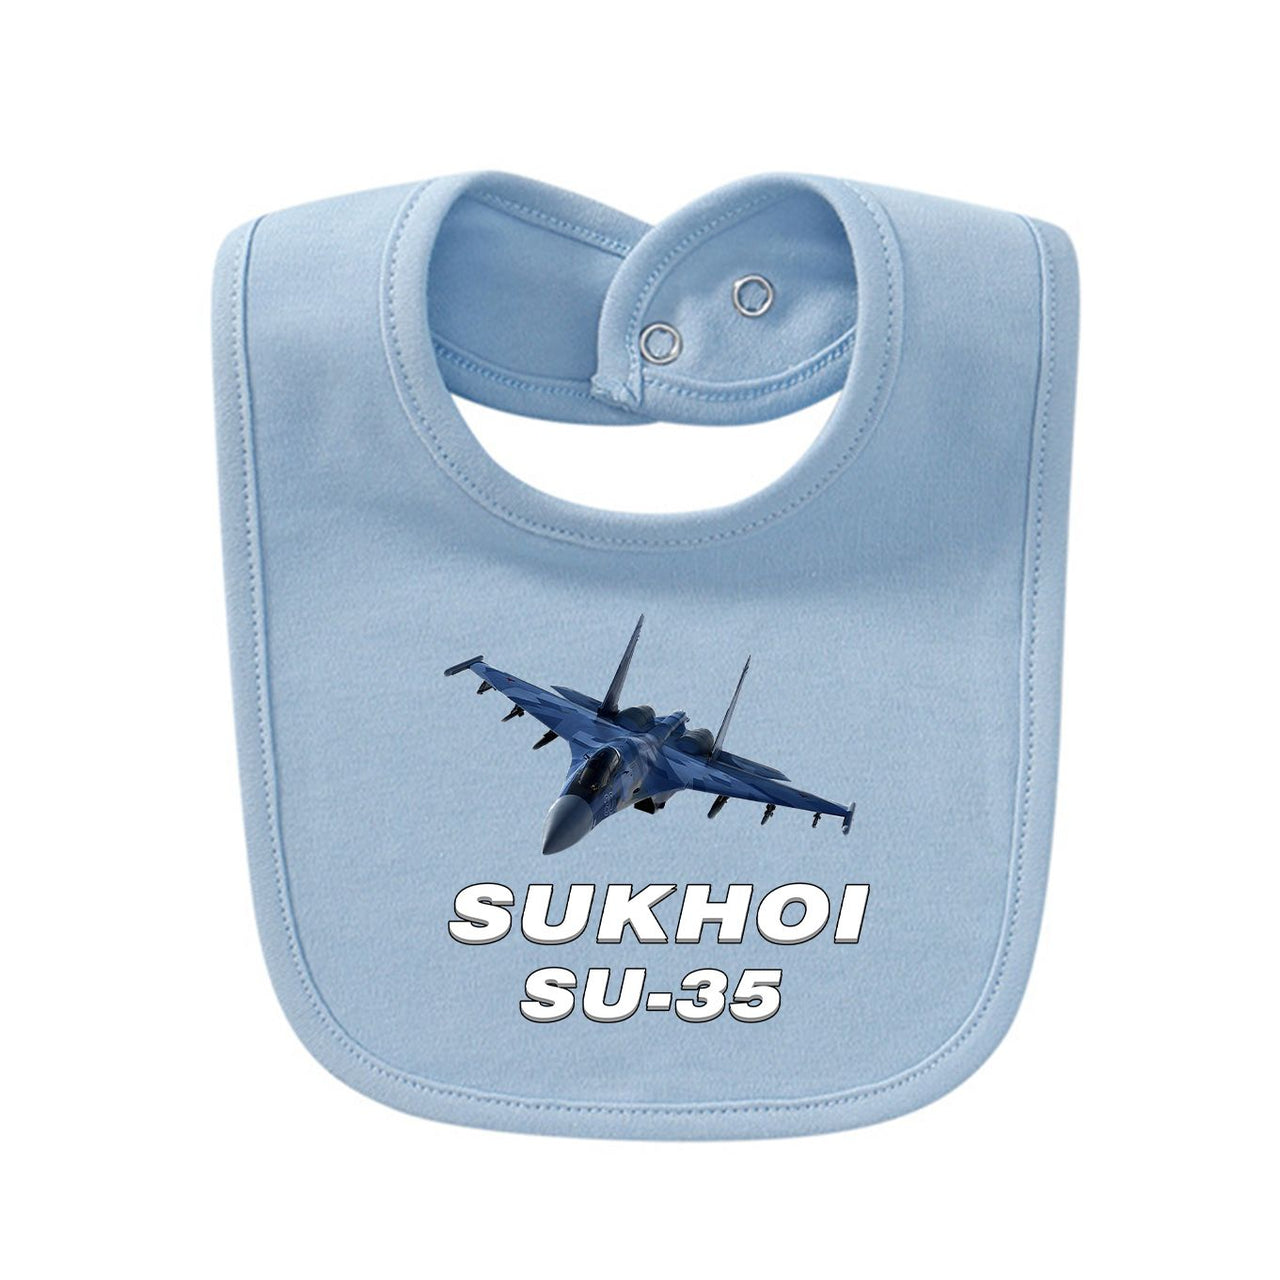 The Sukhoi SU-35 Designed Baby Saliva & Feeding Towels